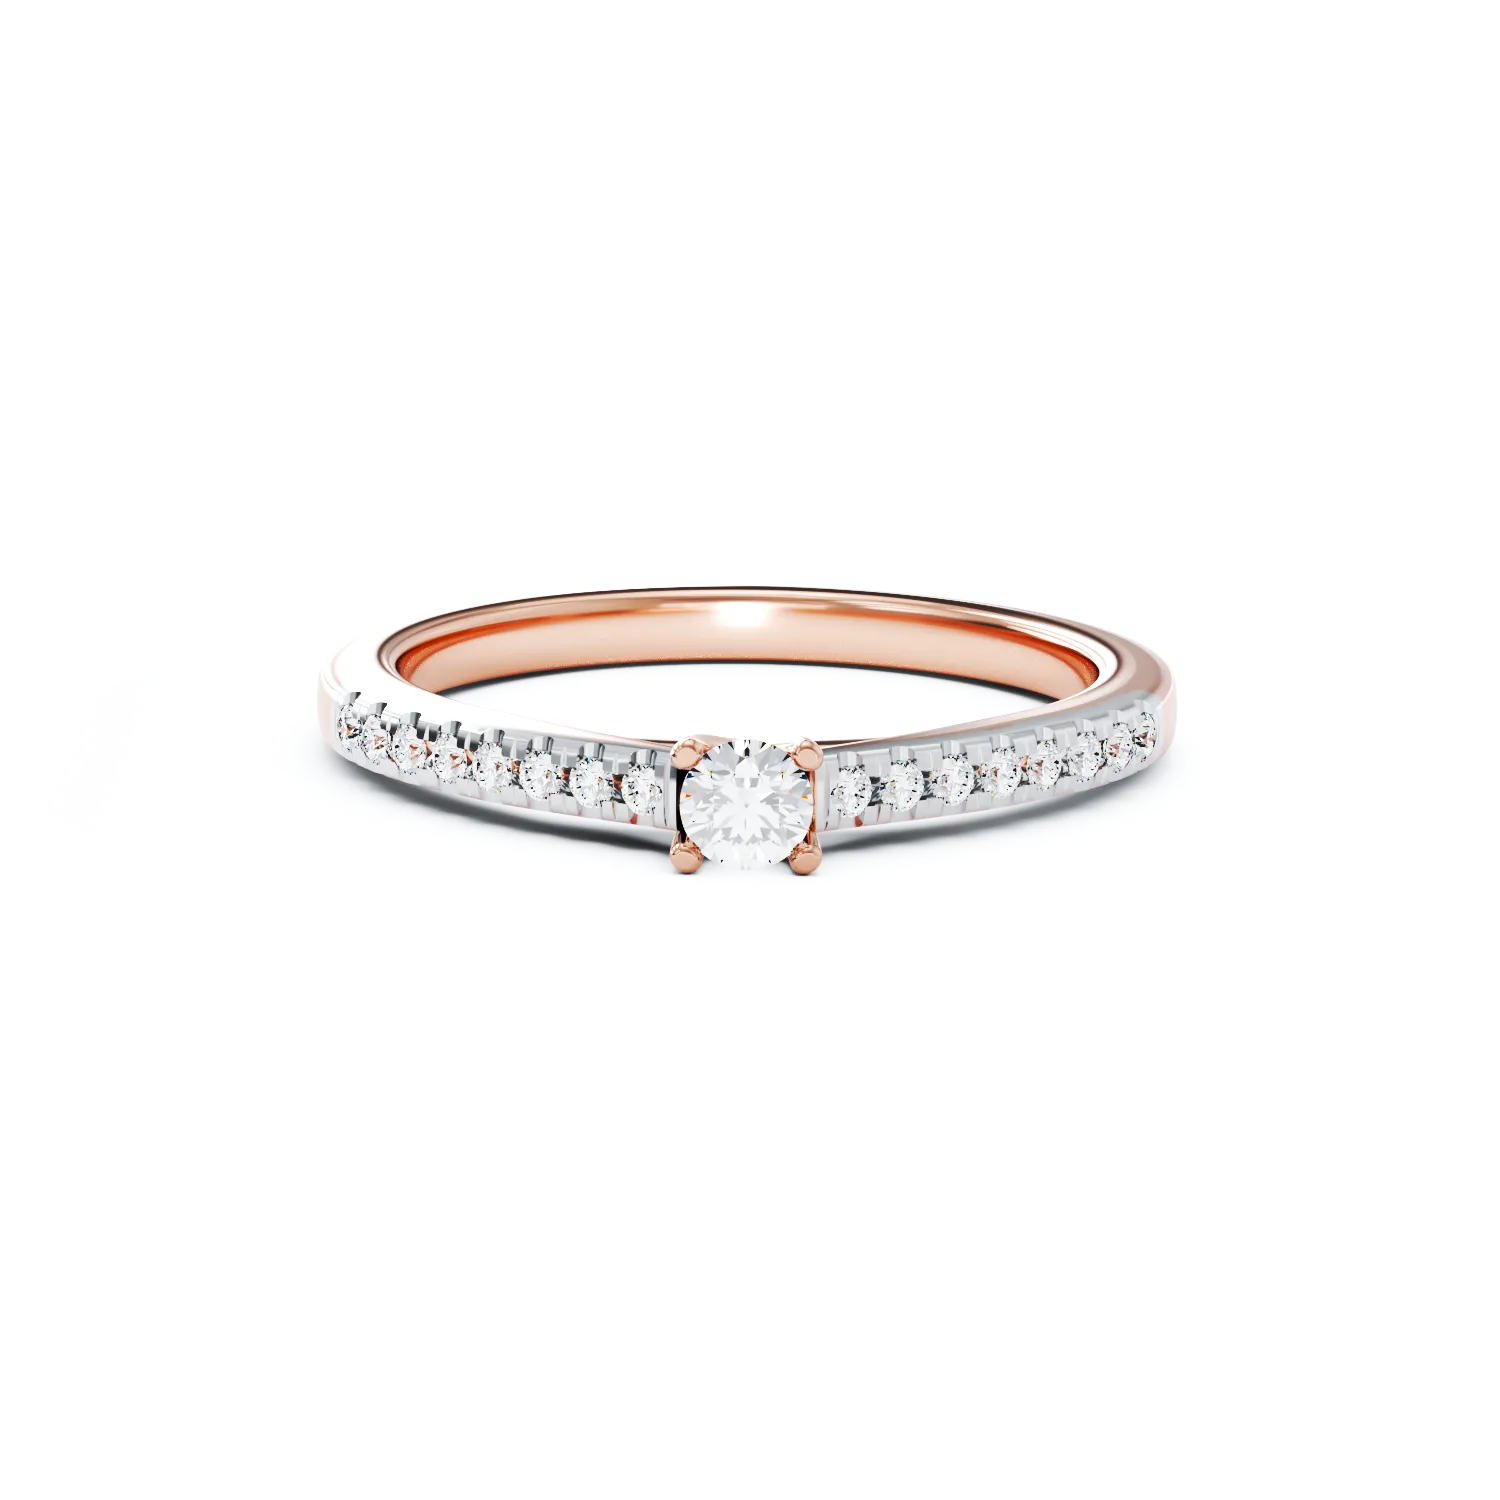 Eljegyzési gyűrű 18K-os rózsaszín aranyból 0,2ct gyémánttal és 0,185ct gyémánttal. Gramm: 2,85